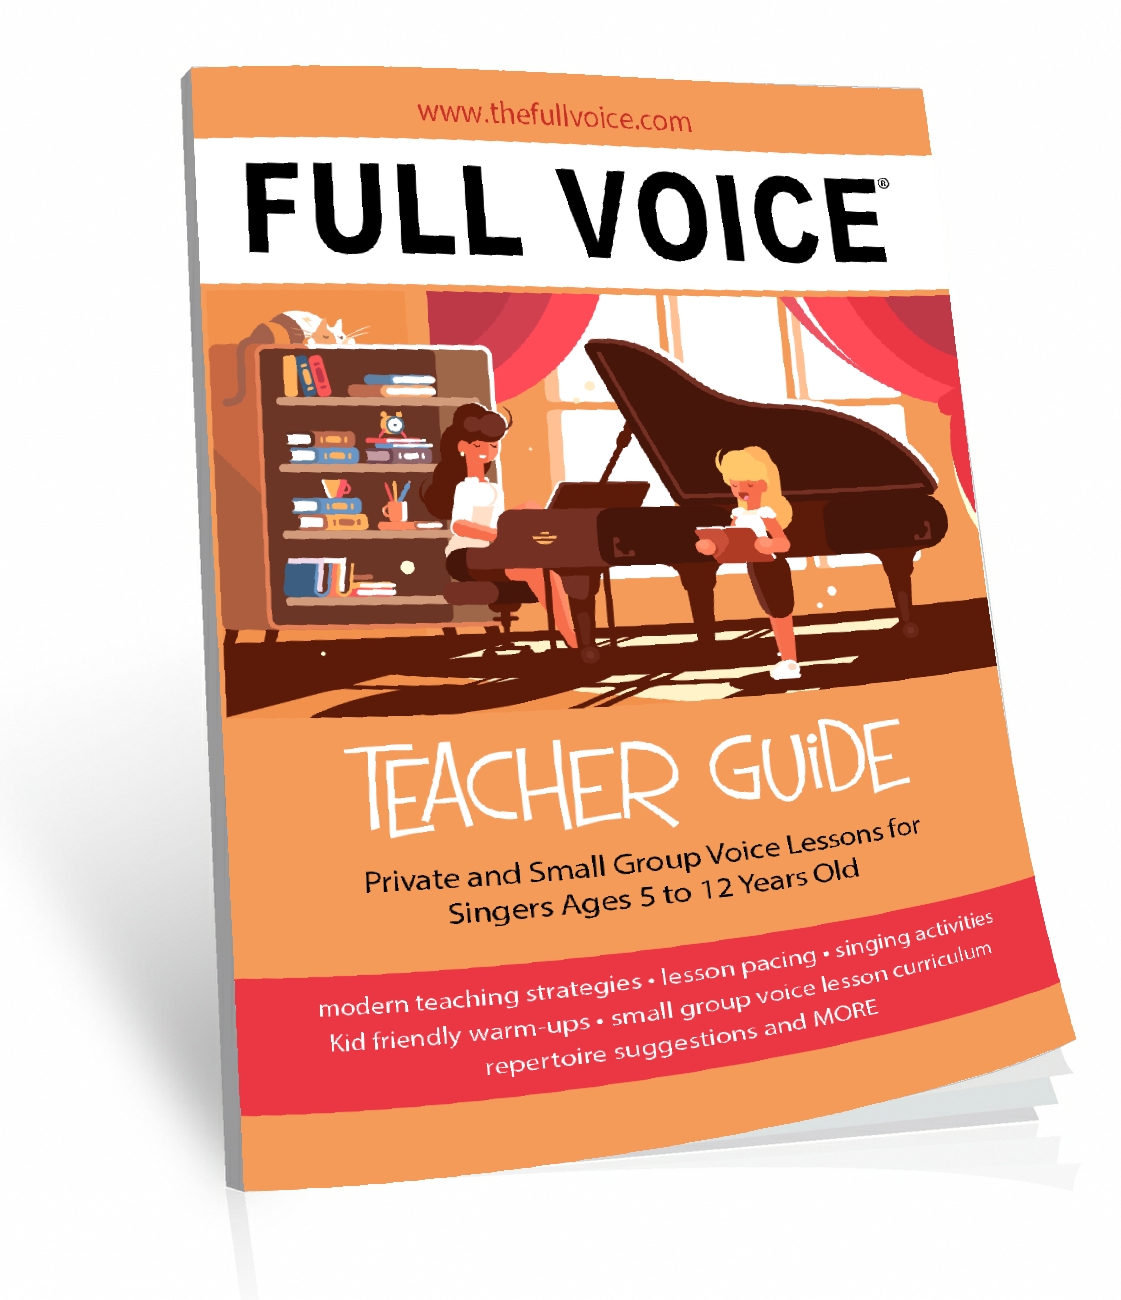 teacher+guide+cover+mock+up